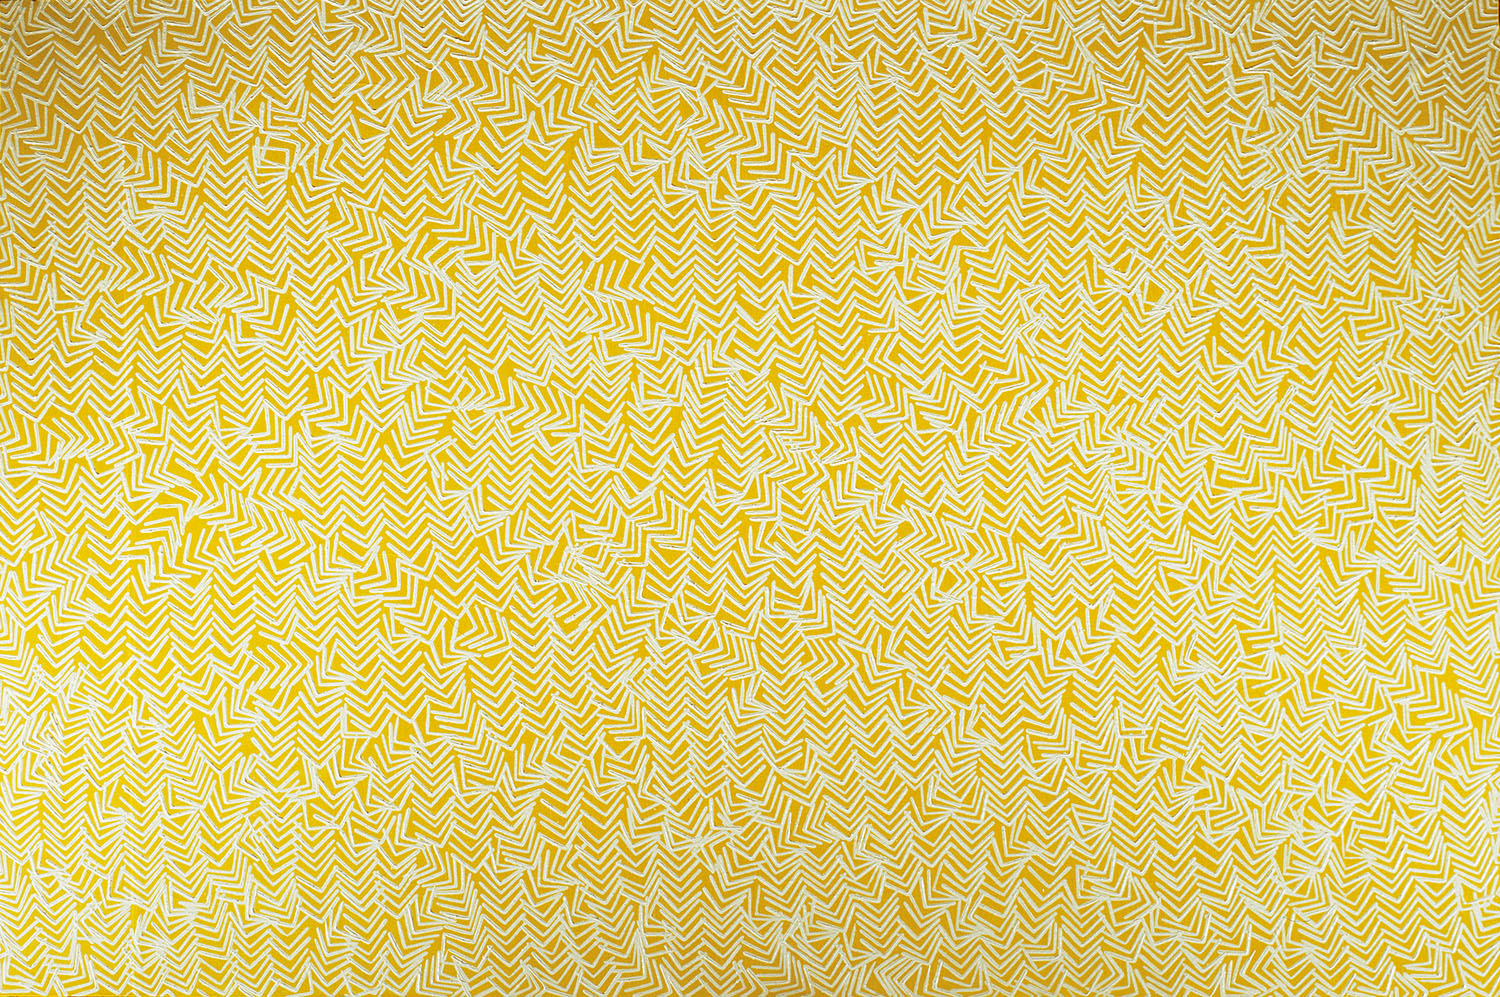 Composició cinètica, 1974, oli sobre tela, cm 97 x 146